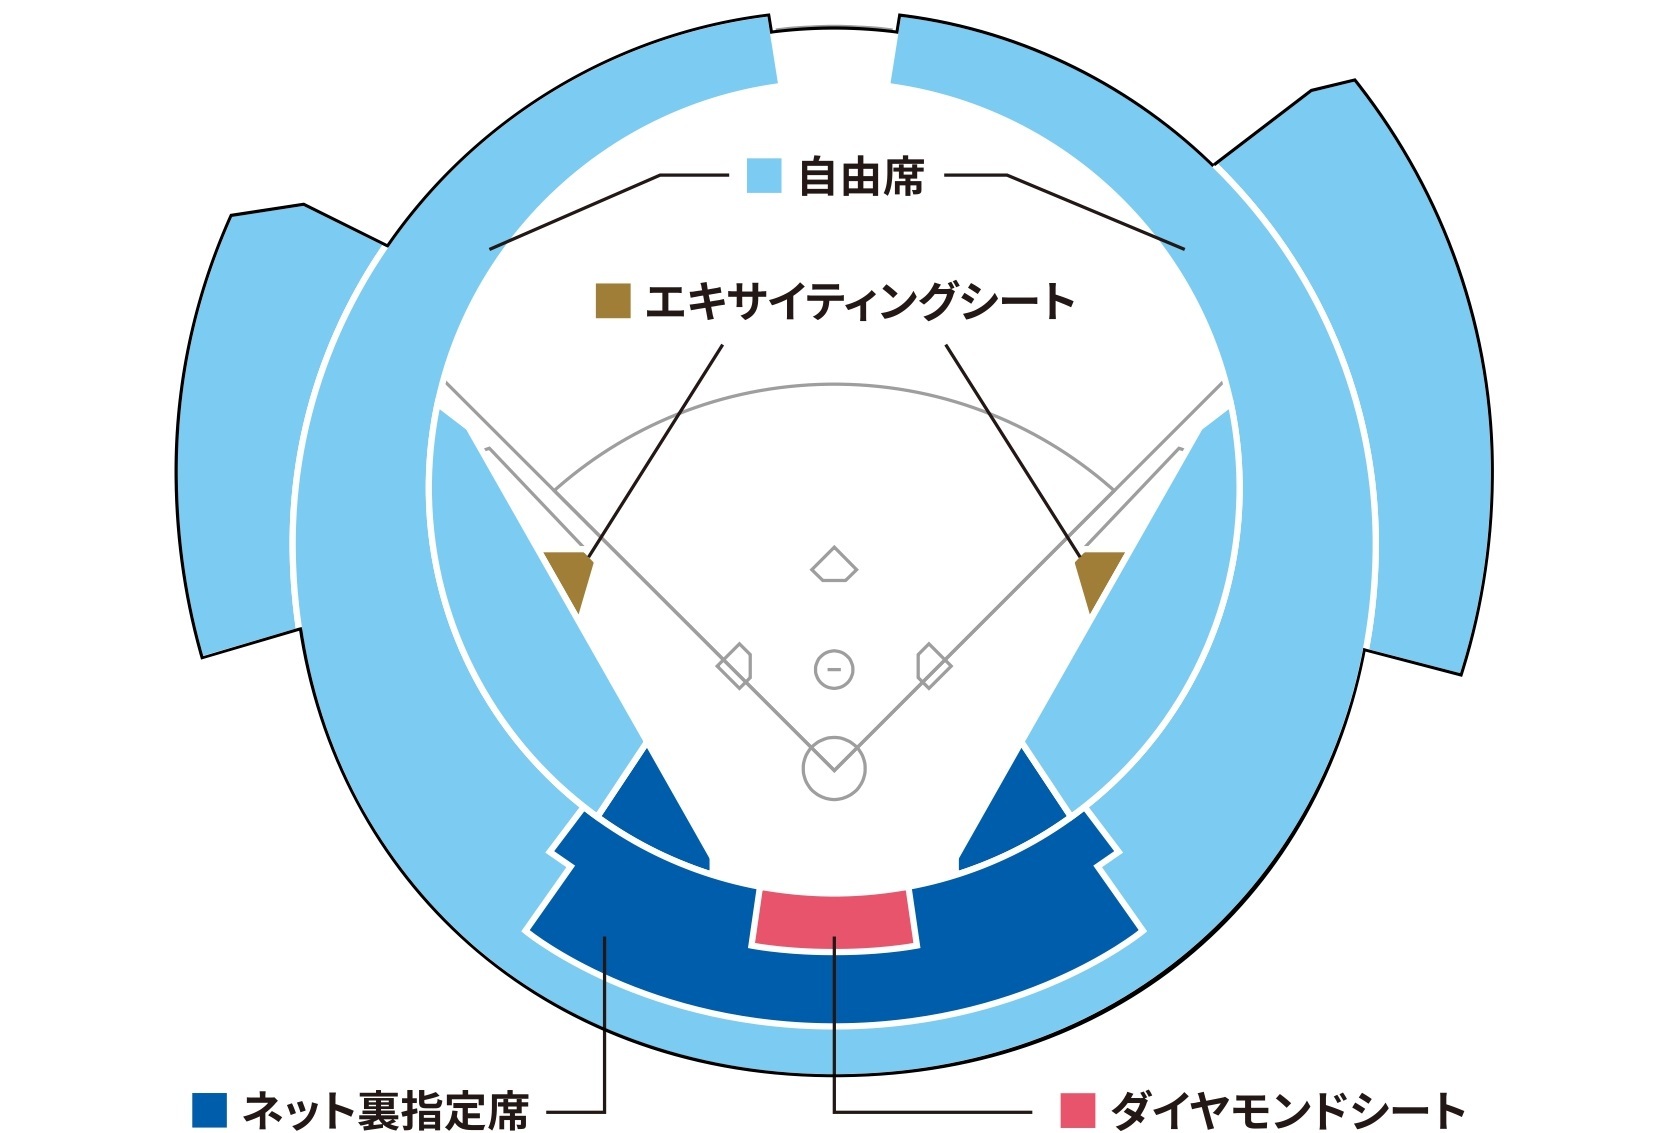 横浜スタジアムの座席表